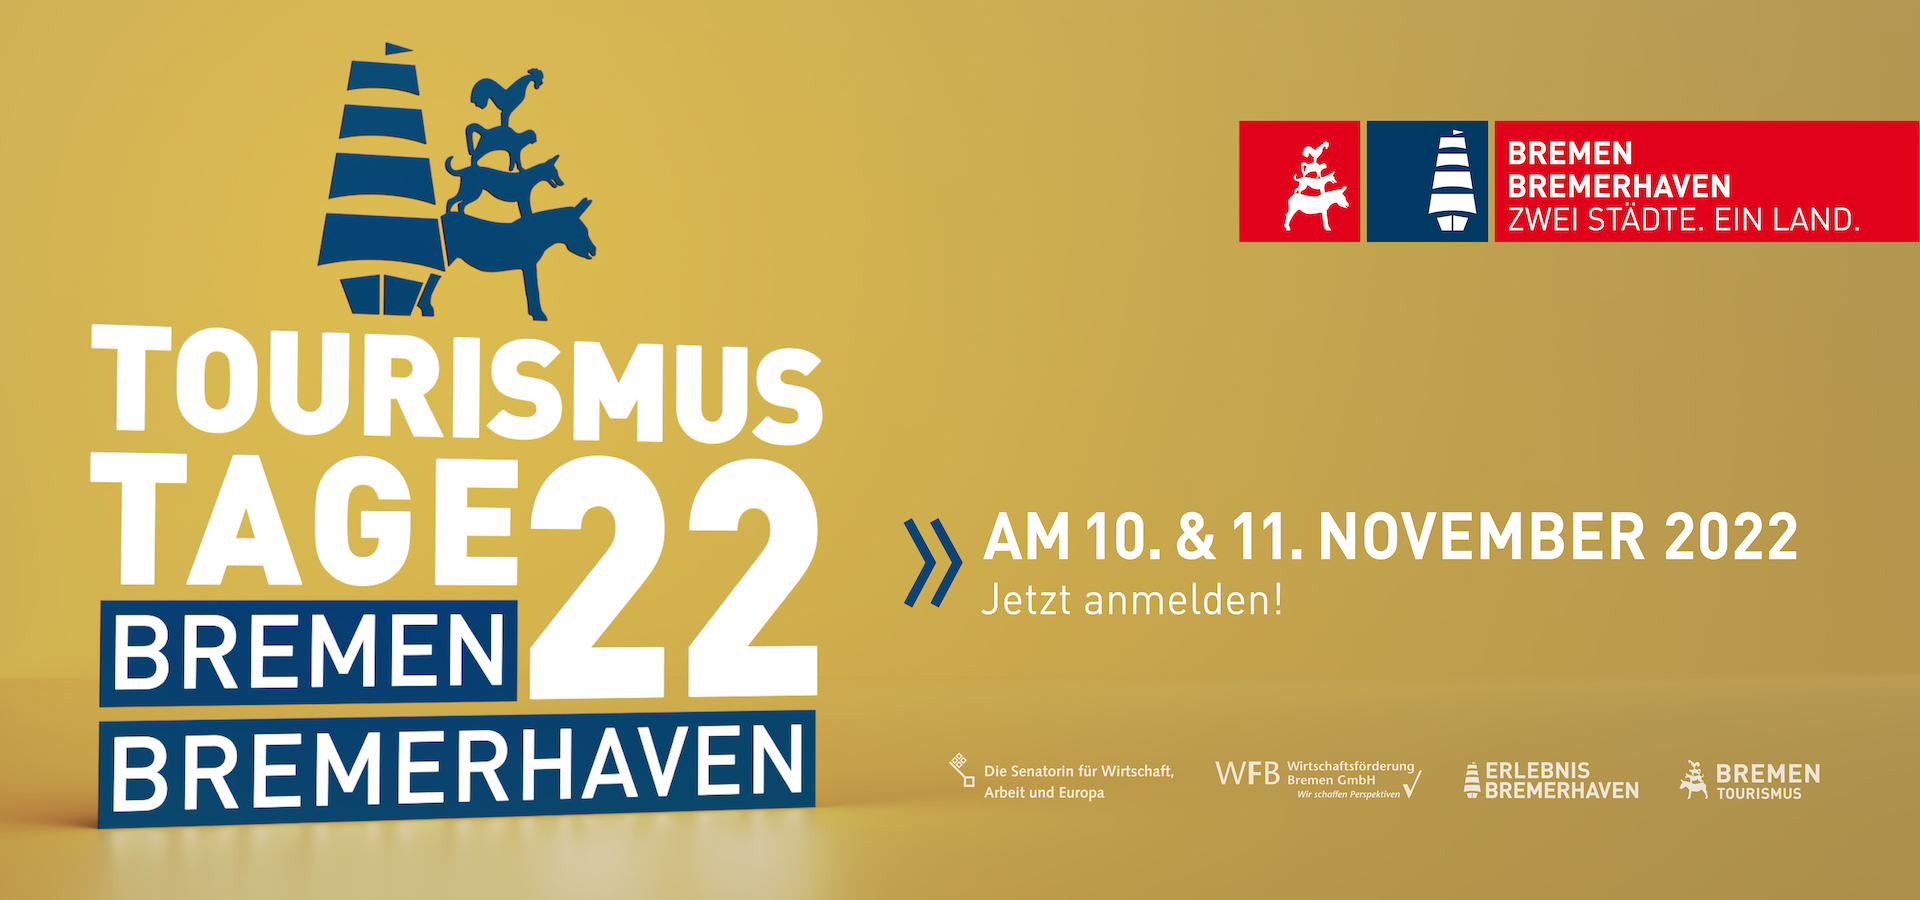 Keyvisual der Tourismustage 2022 im Land Bremen am 10. und 11. November 2022